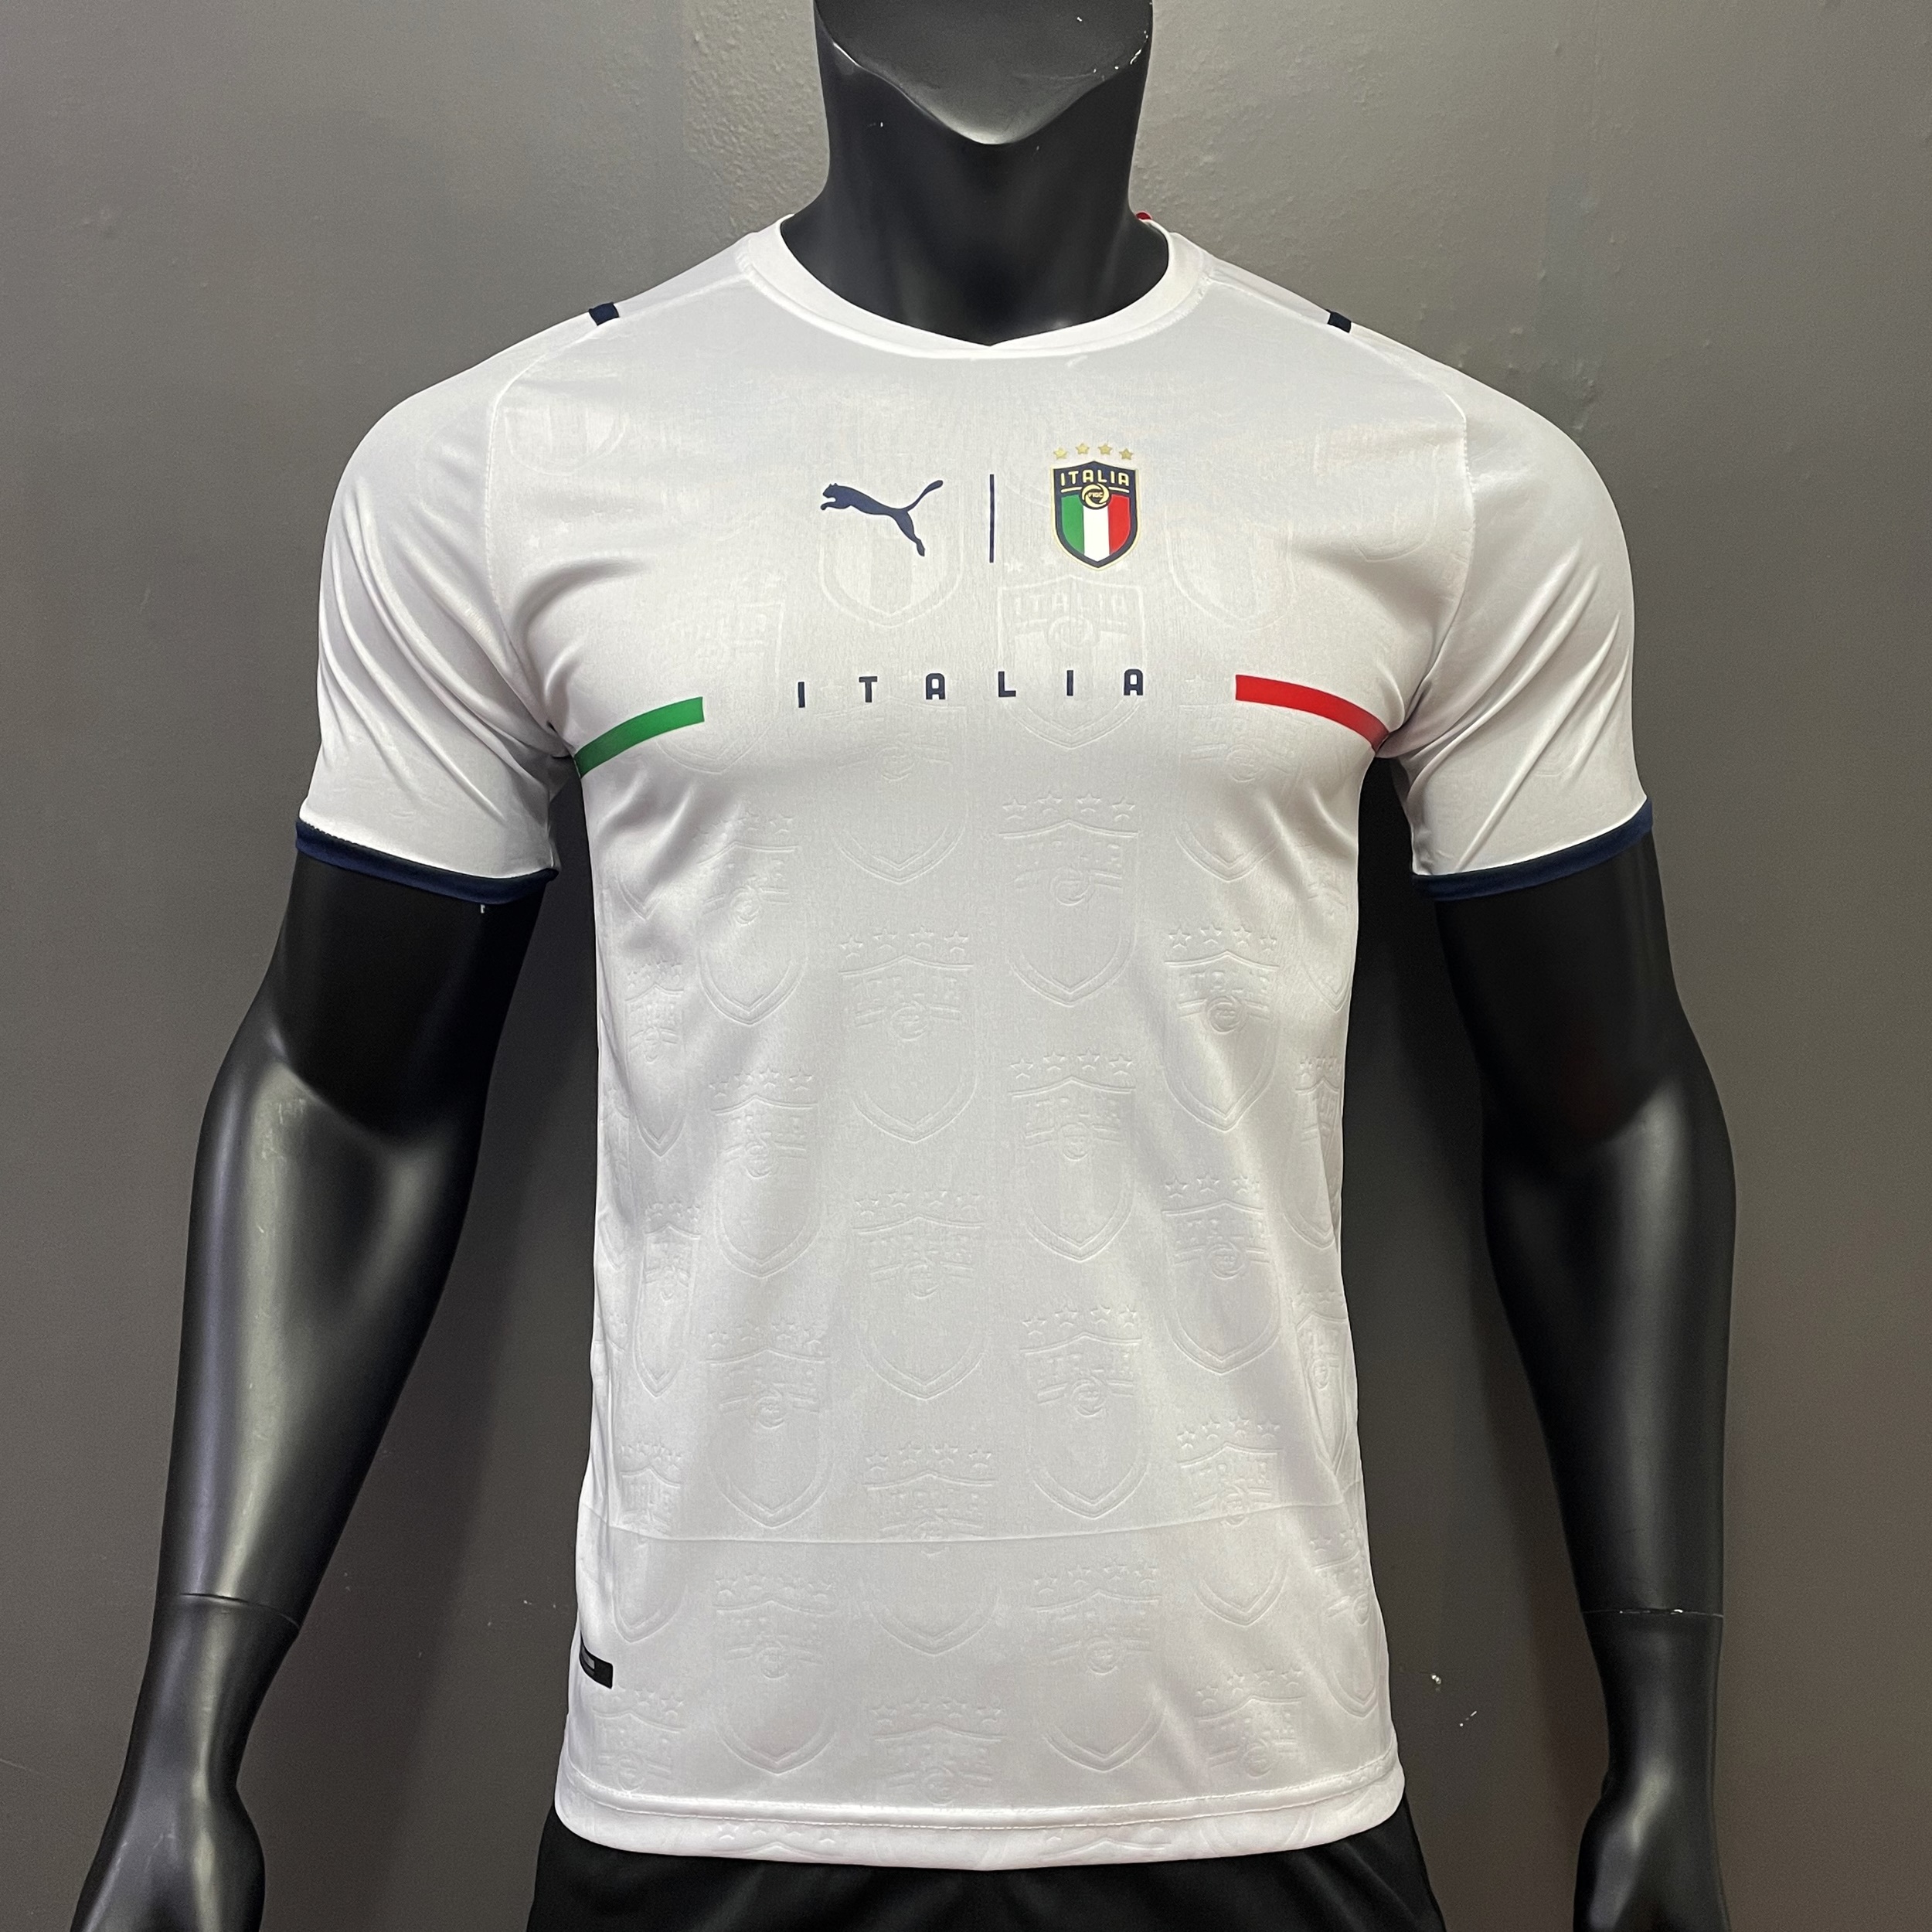 เสื้อสโมสรฟุตบอล ทีม Italy เสื้อบอล เสื้อกีฬา ผ้ายืด ใส่สบาย รับประกันคุณภาพ ผ้าเกรดA